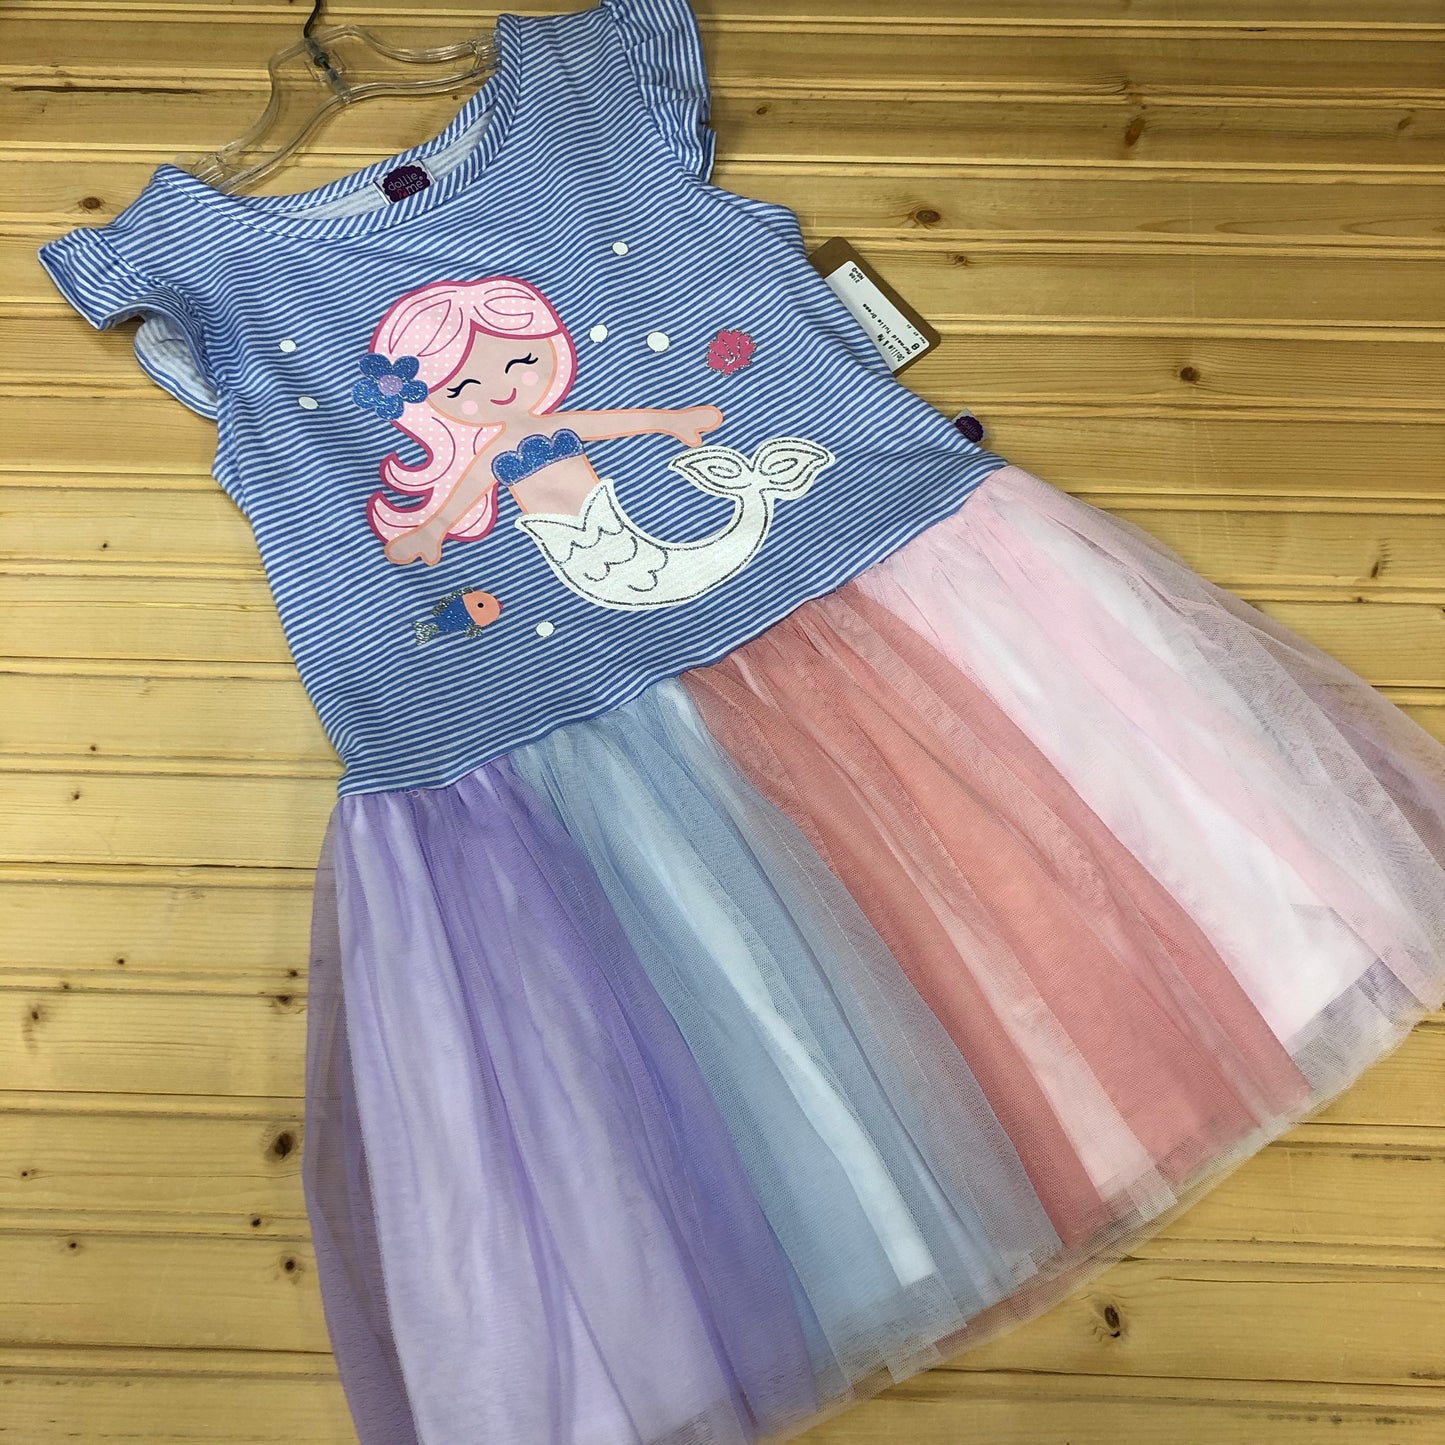 Mermaid Tulle Dress